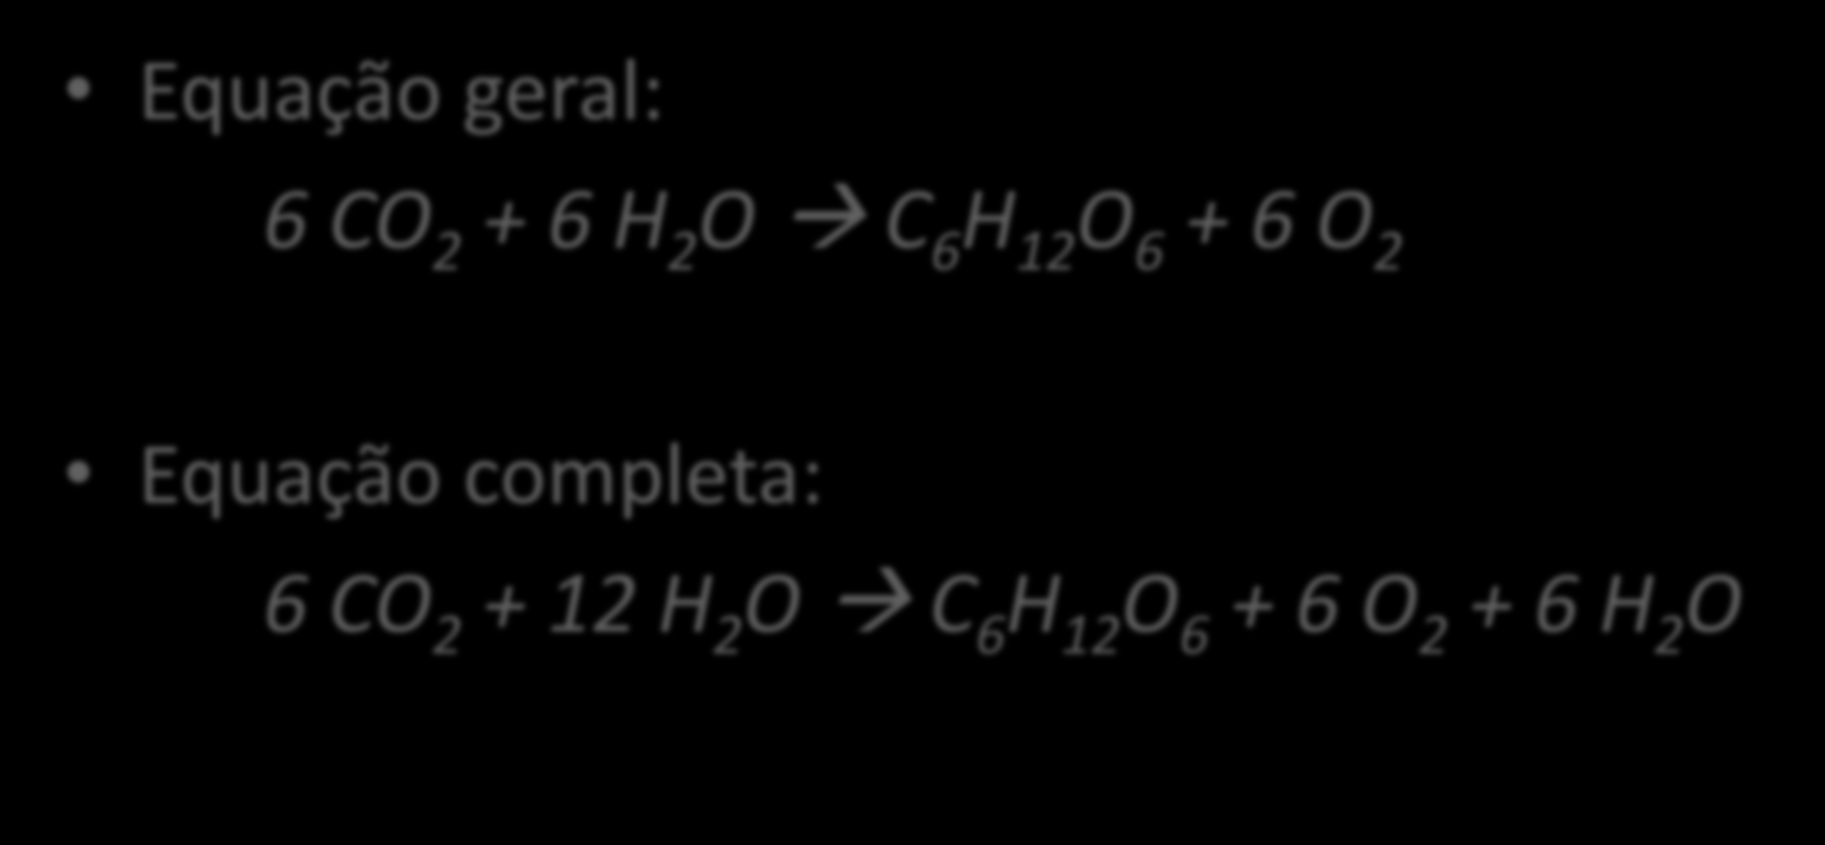 REPRESENTAÇÃO Equação geral: 6 CO 2 + 6 H 2 O C 6 H 12 O 6 + 6 O 2